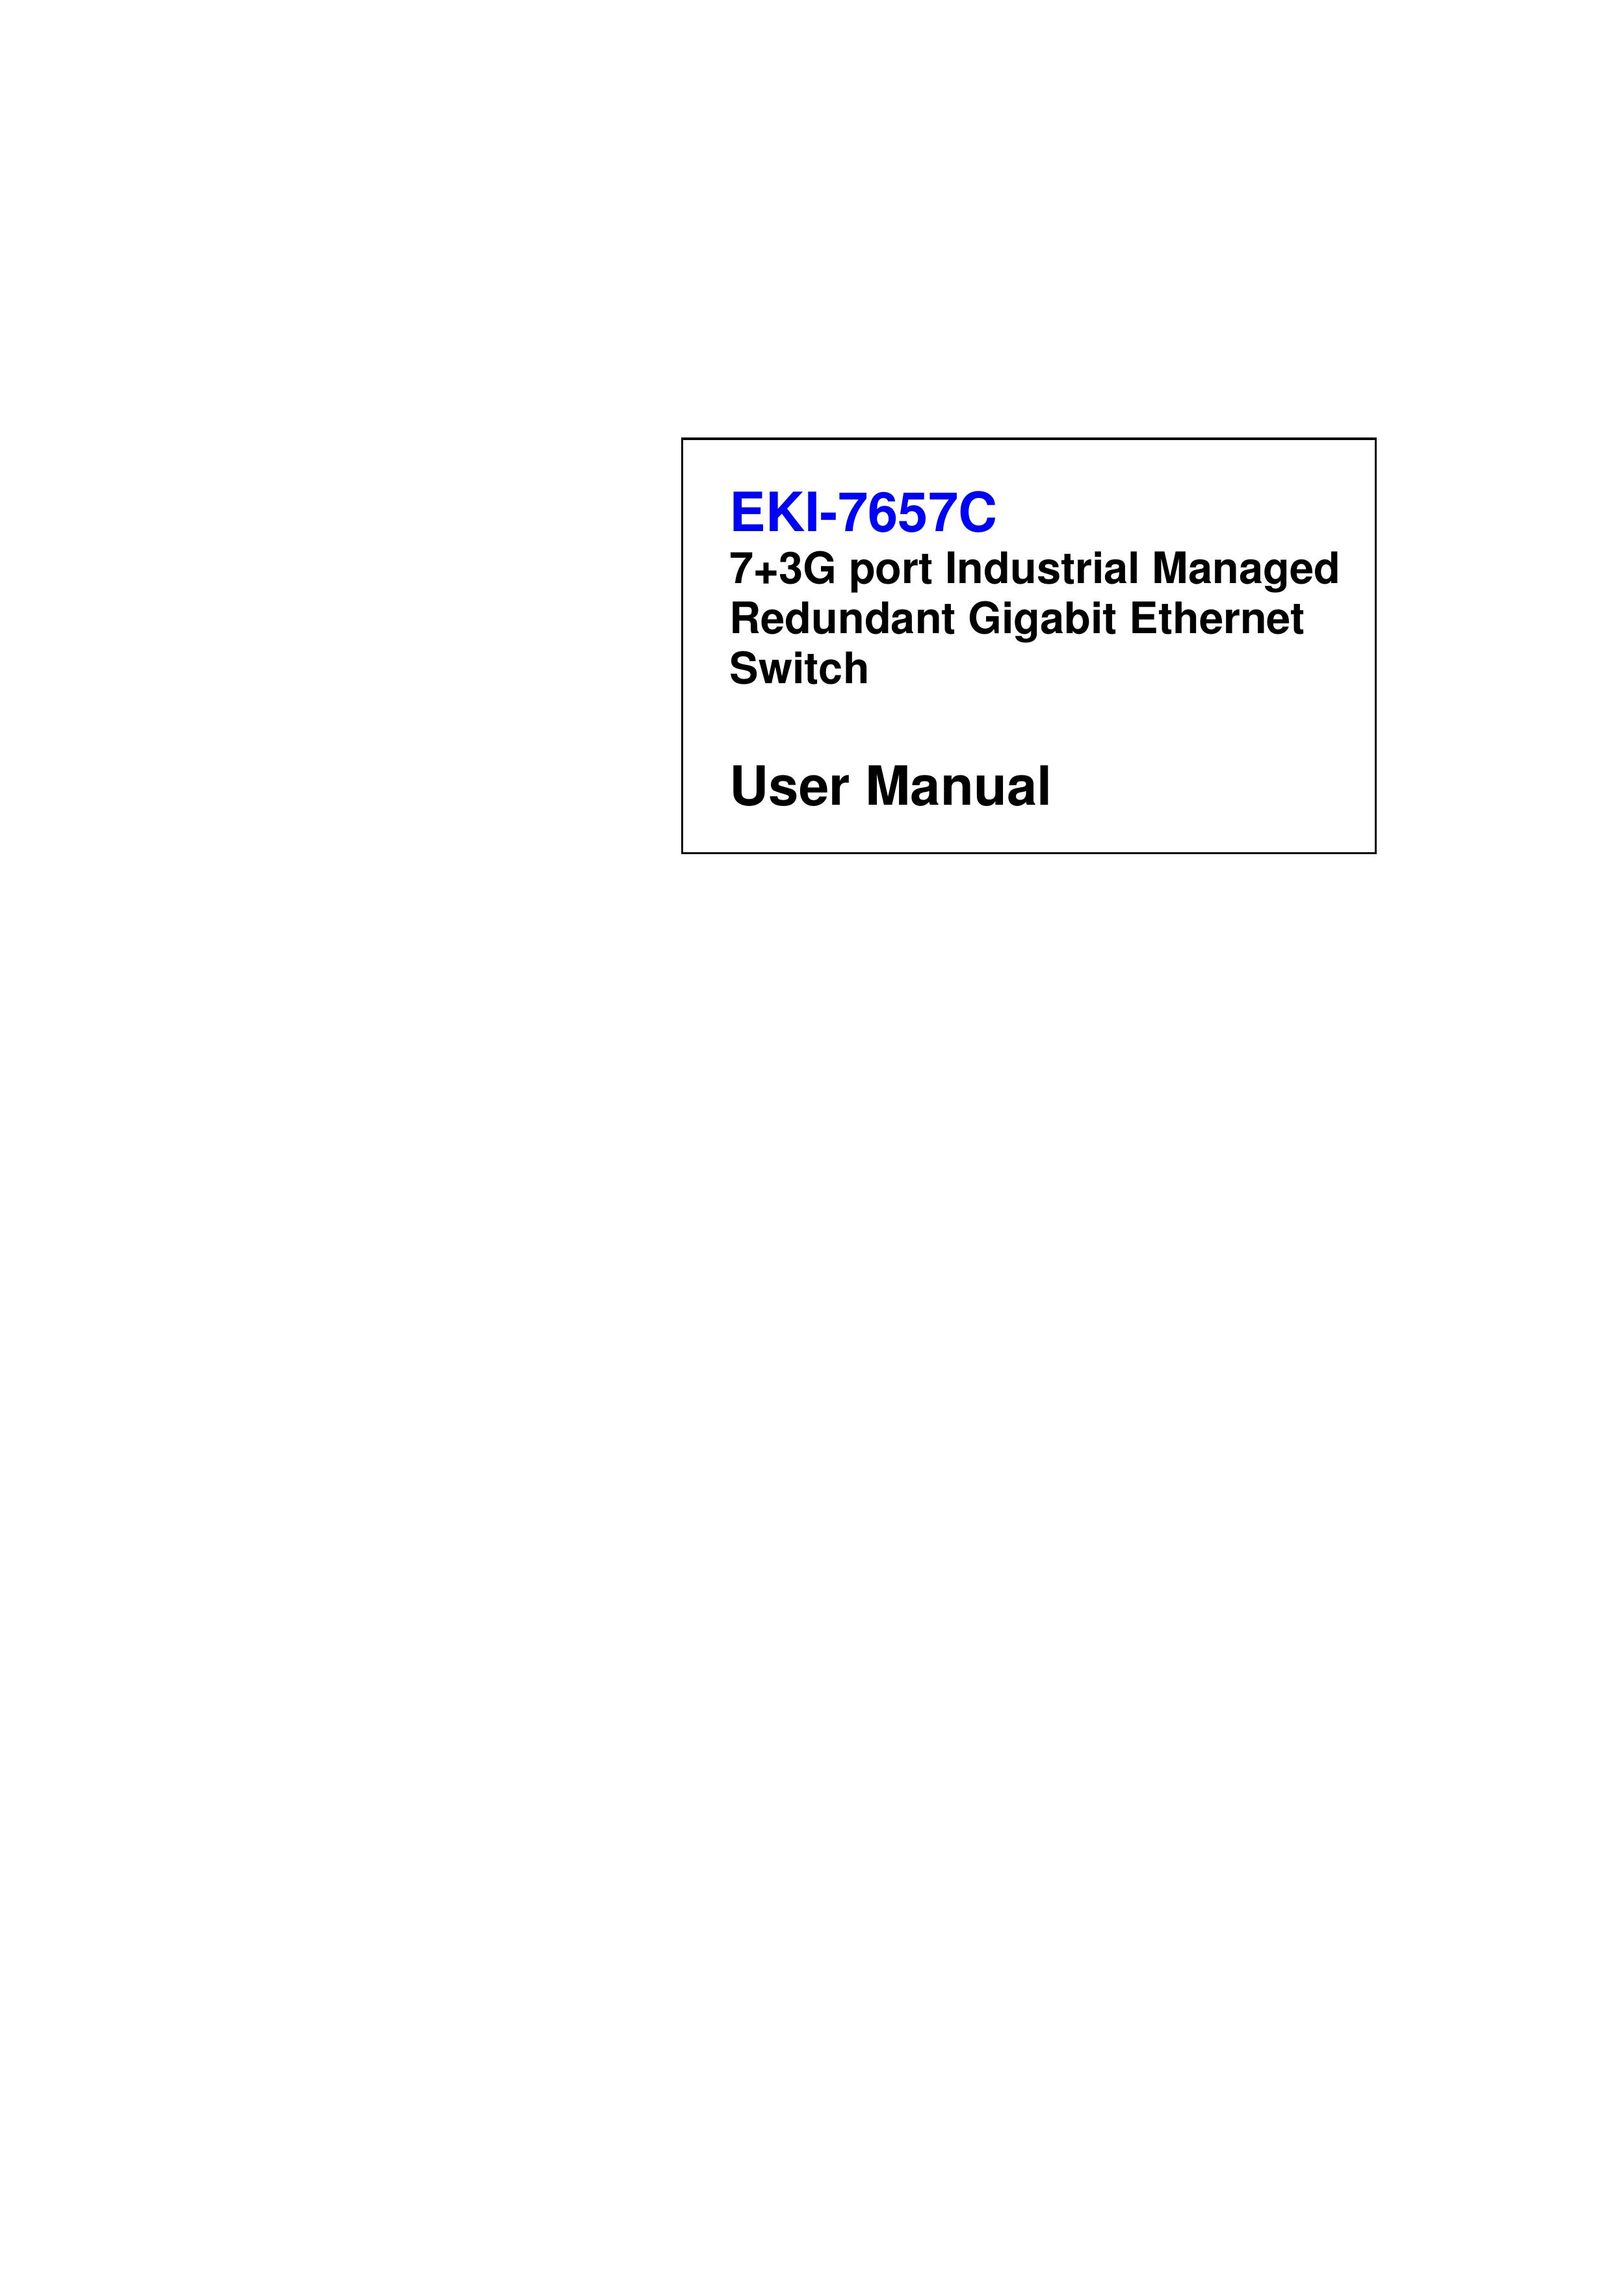 Advantech EKI-7657C Switch User Manual